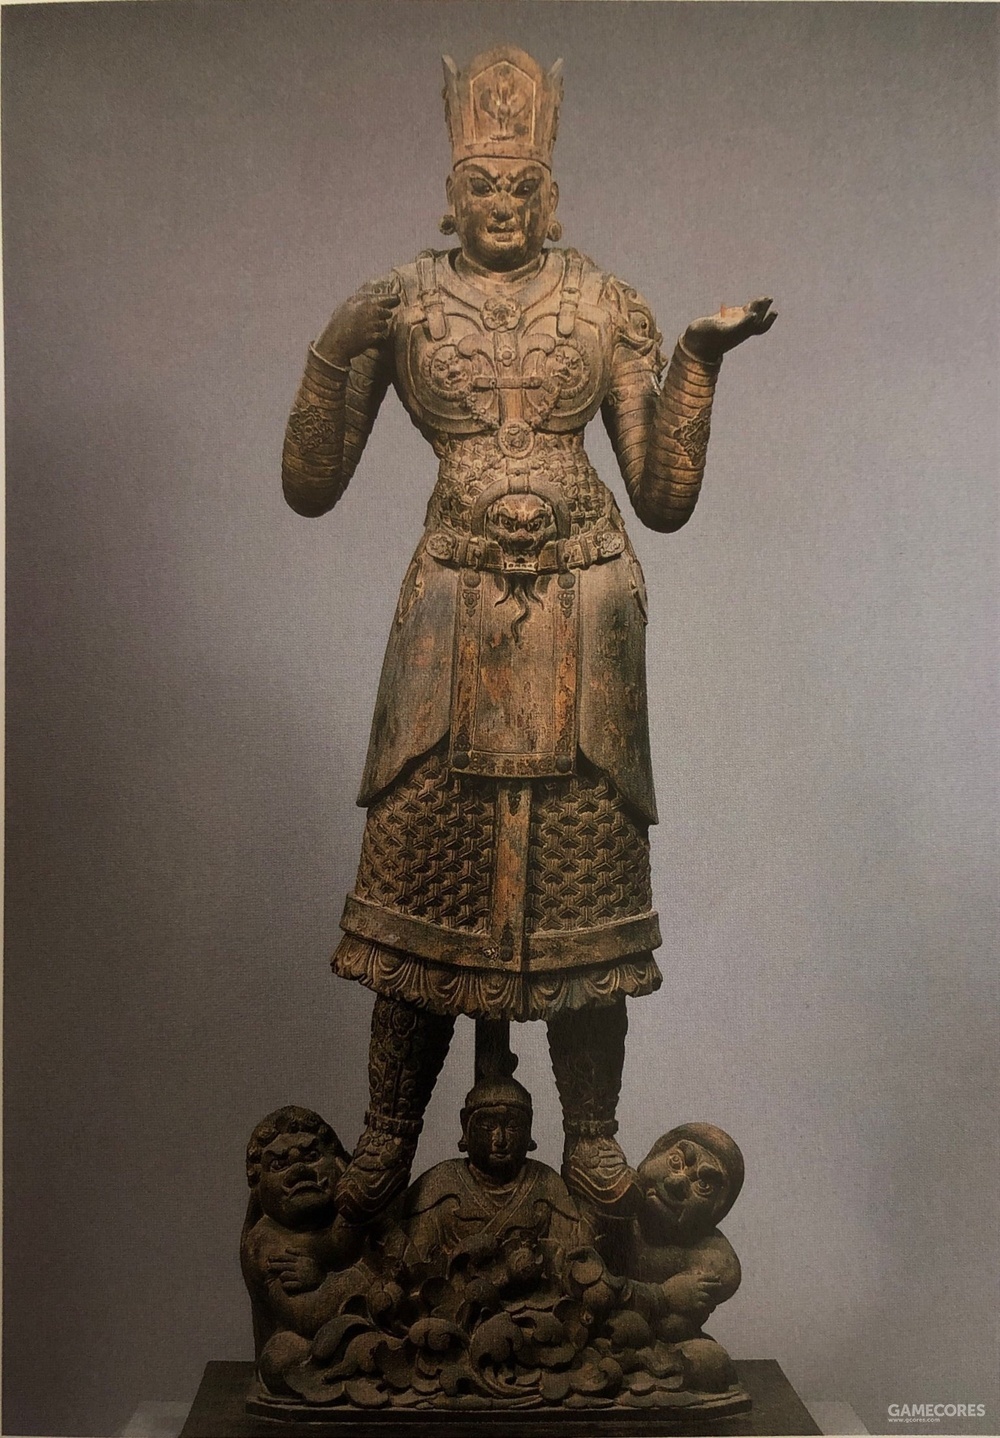 毘沙門天溯源 来自古代印度的天王为何成了日本的军神 Anwen